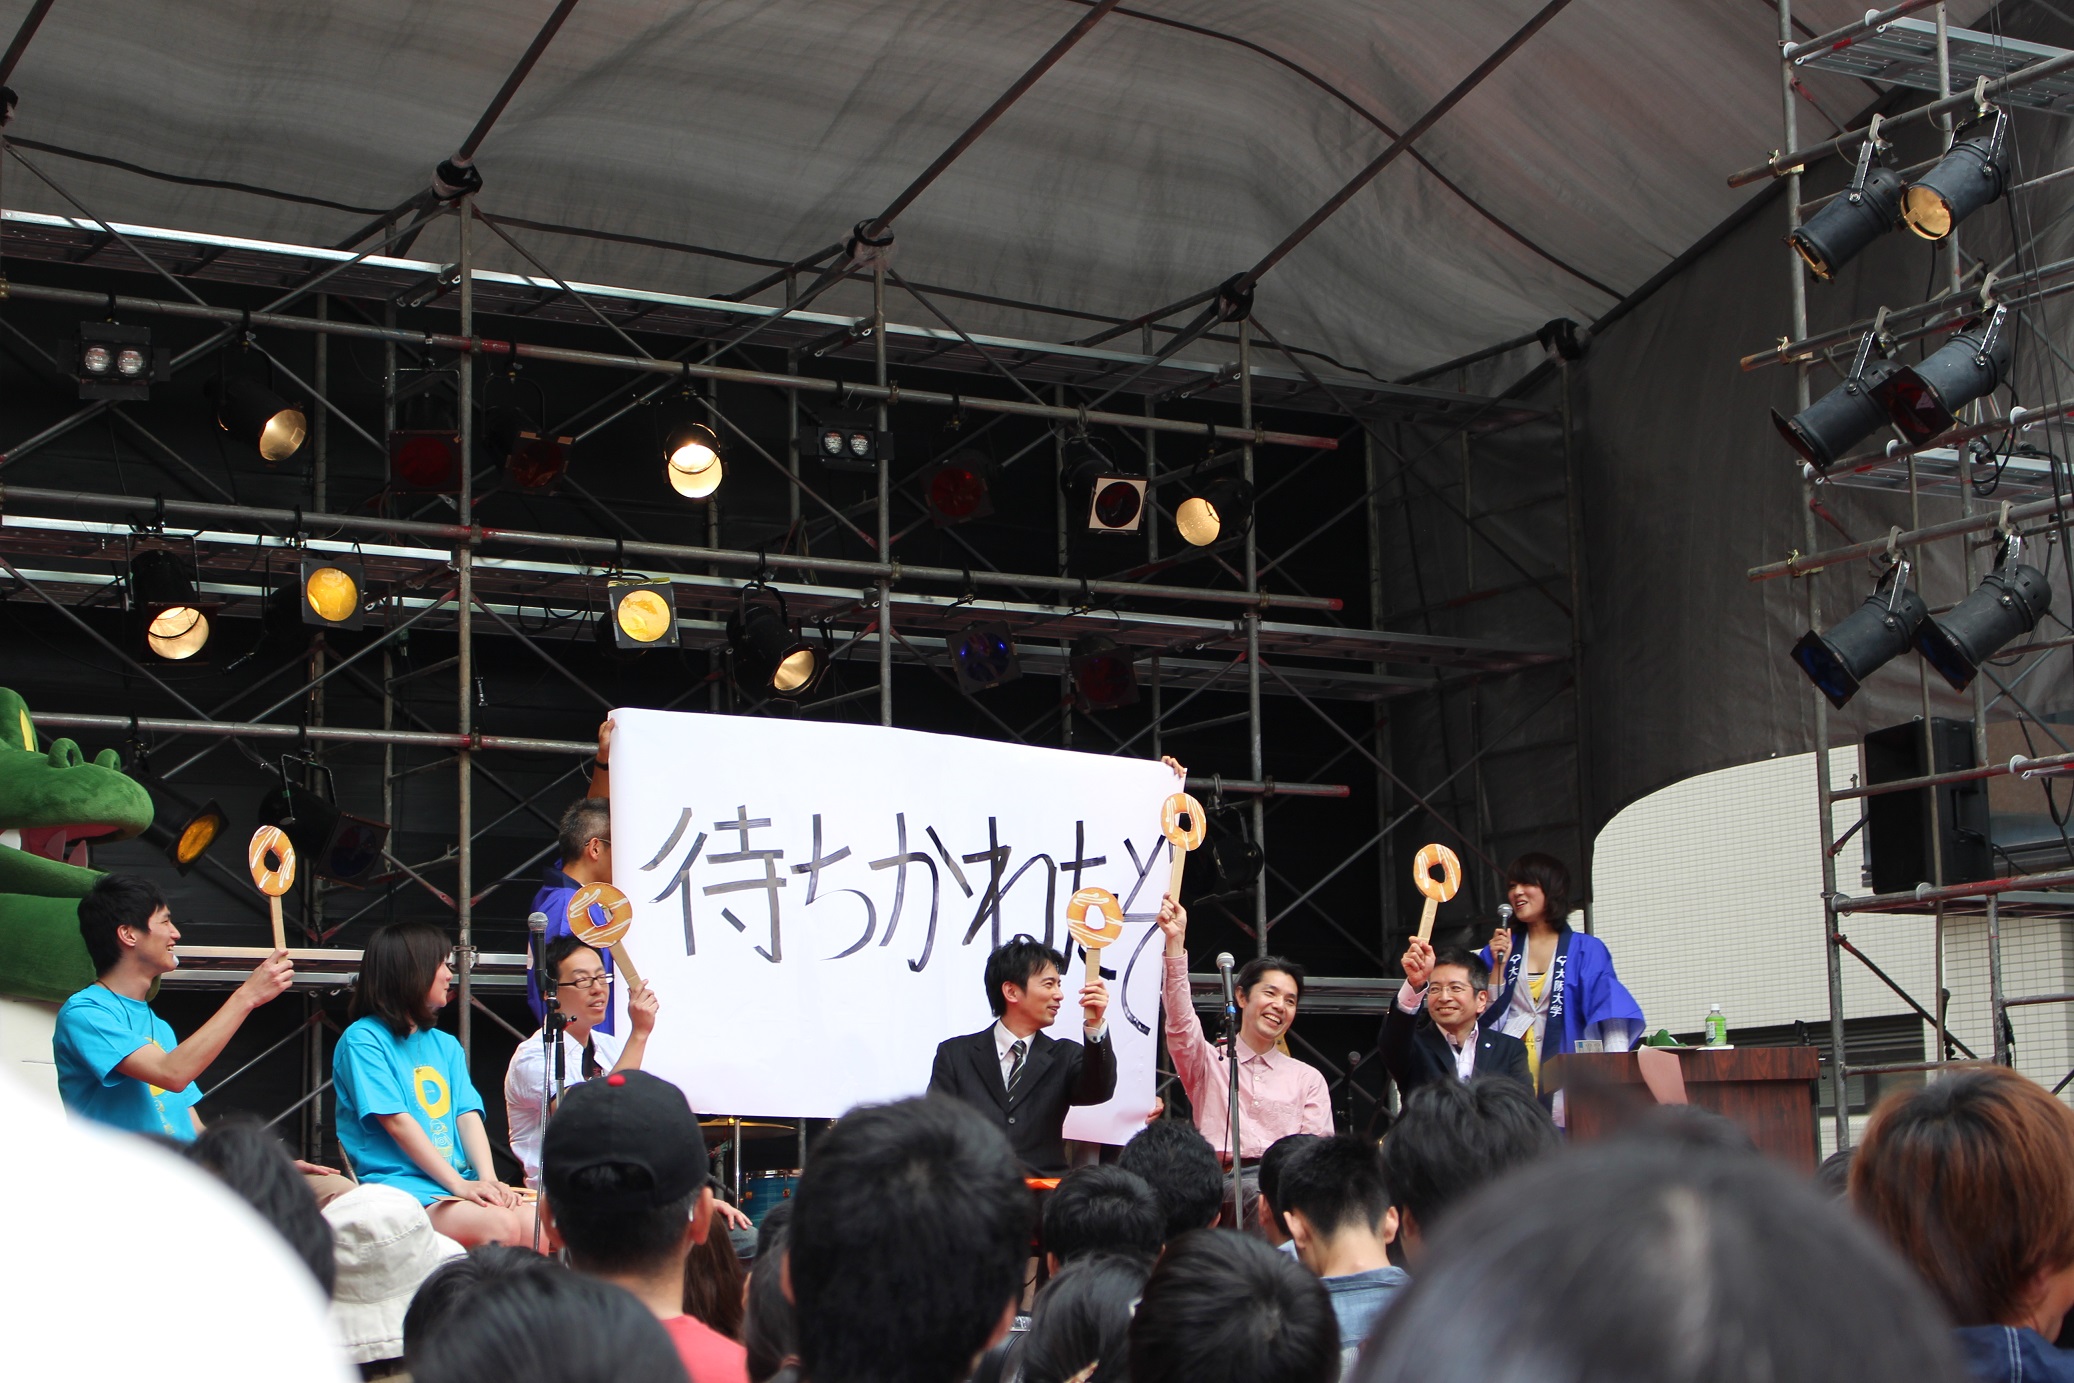 大阪大学未来基金「創立100周年ゆめ募金キャンペーンin いちょう祭」を実施